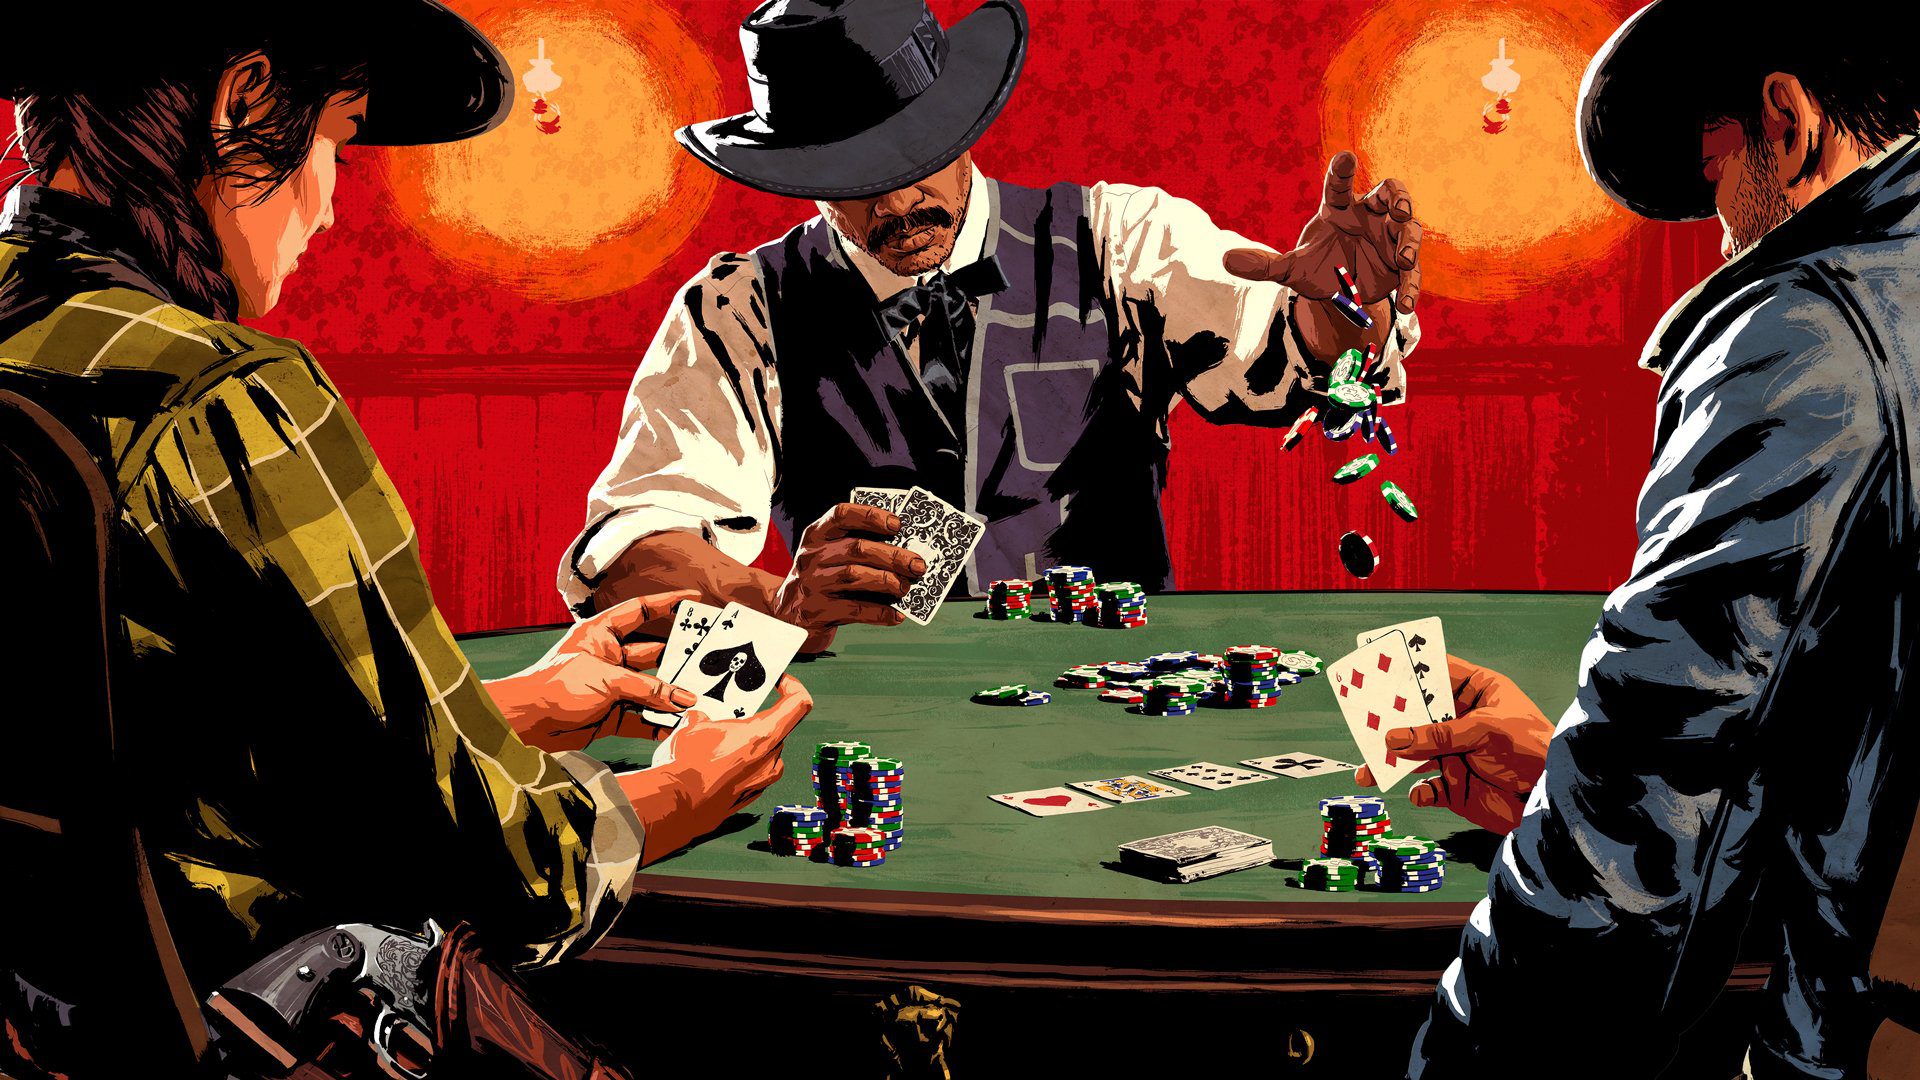 melhores cartas poker